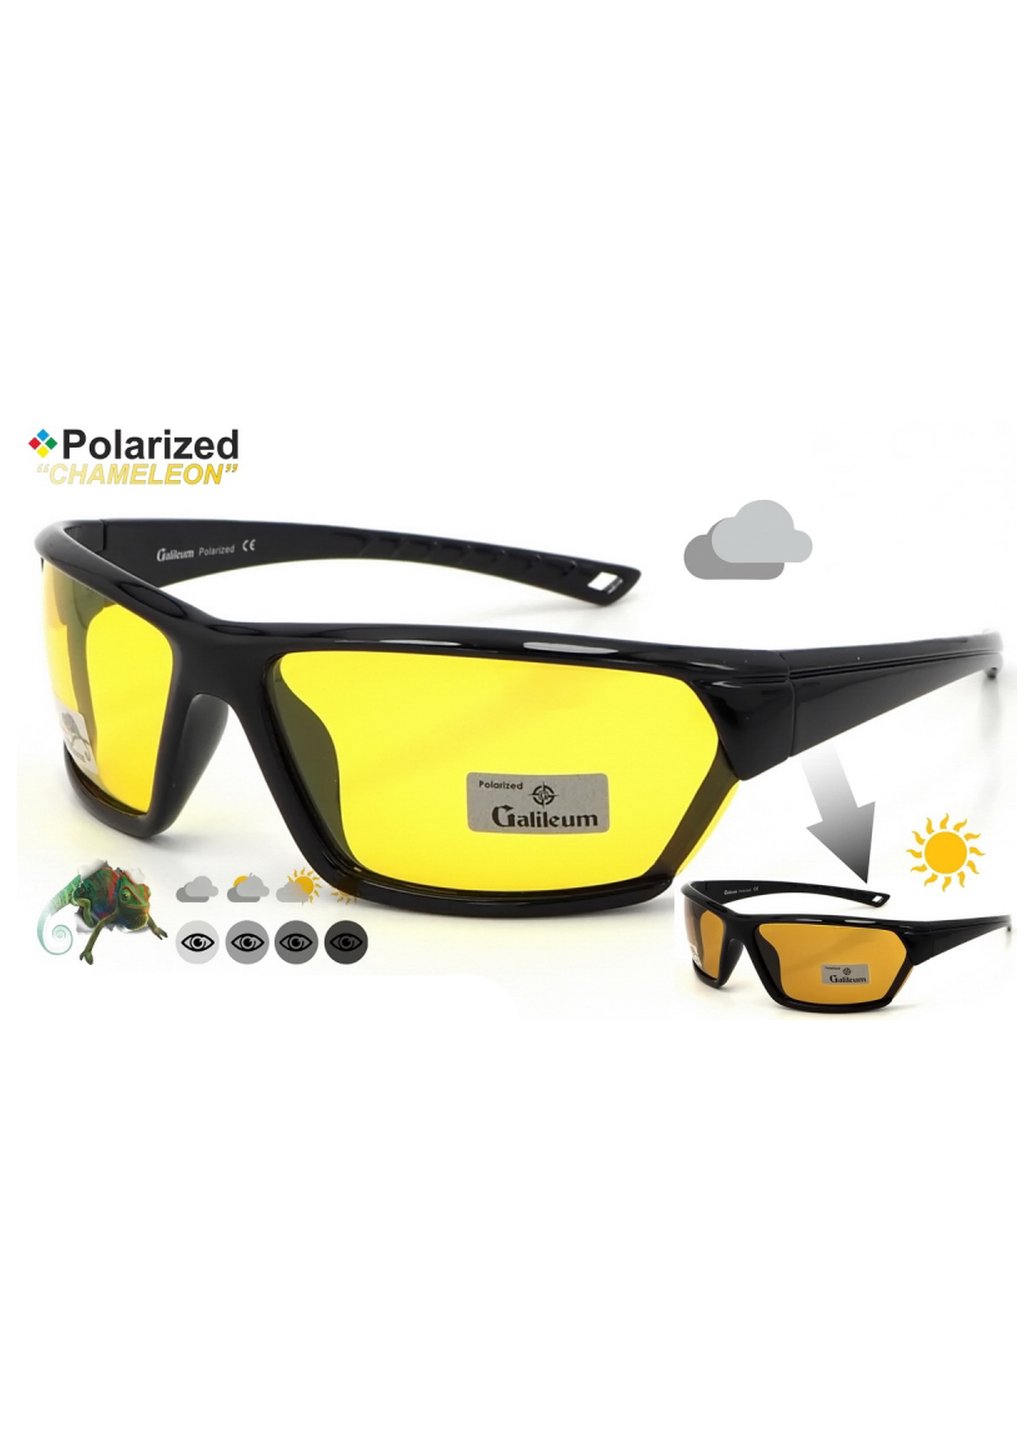 Купить Спортивные очки с поляризацией и фотохромными линзами Galileum 125004 в интернет-магазине